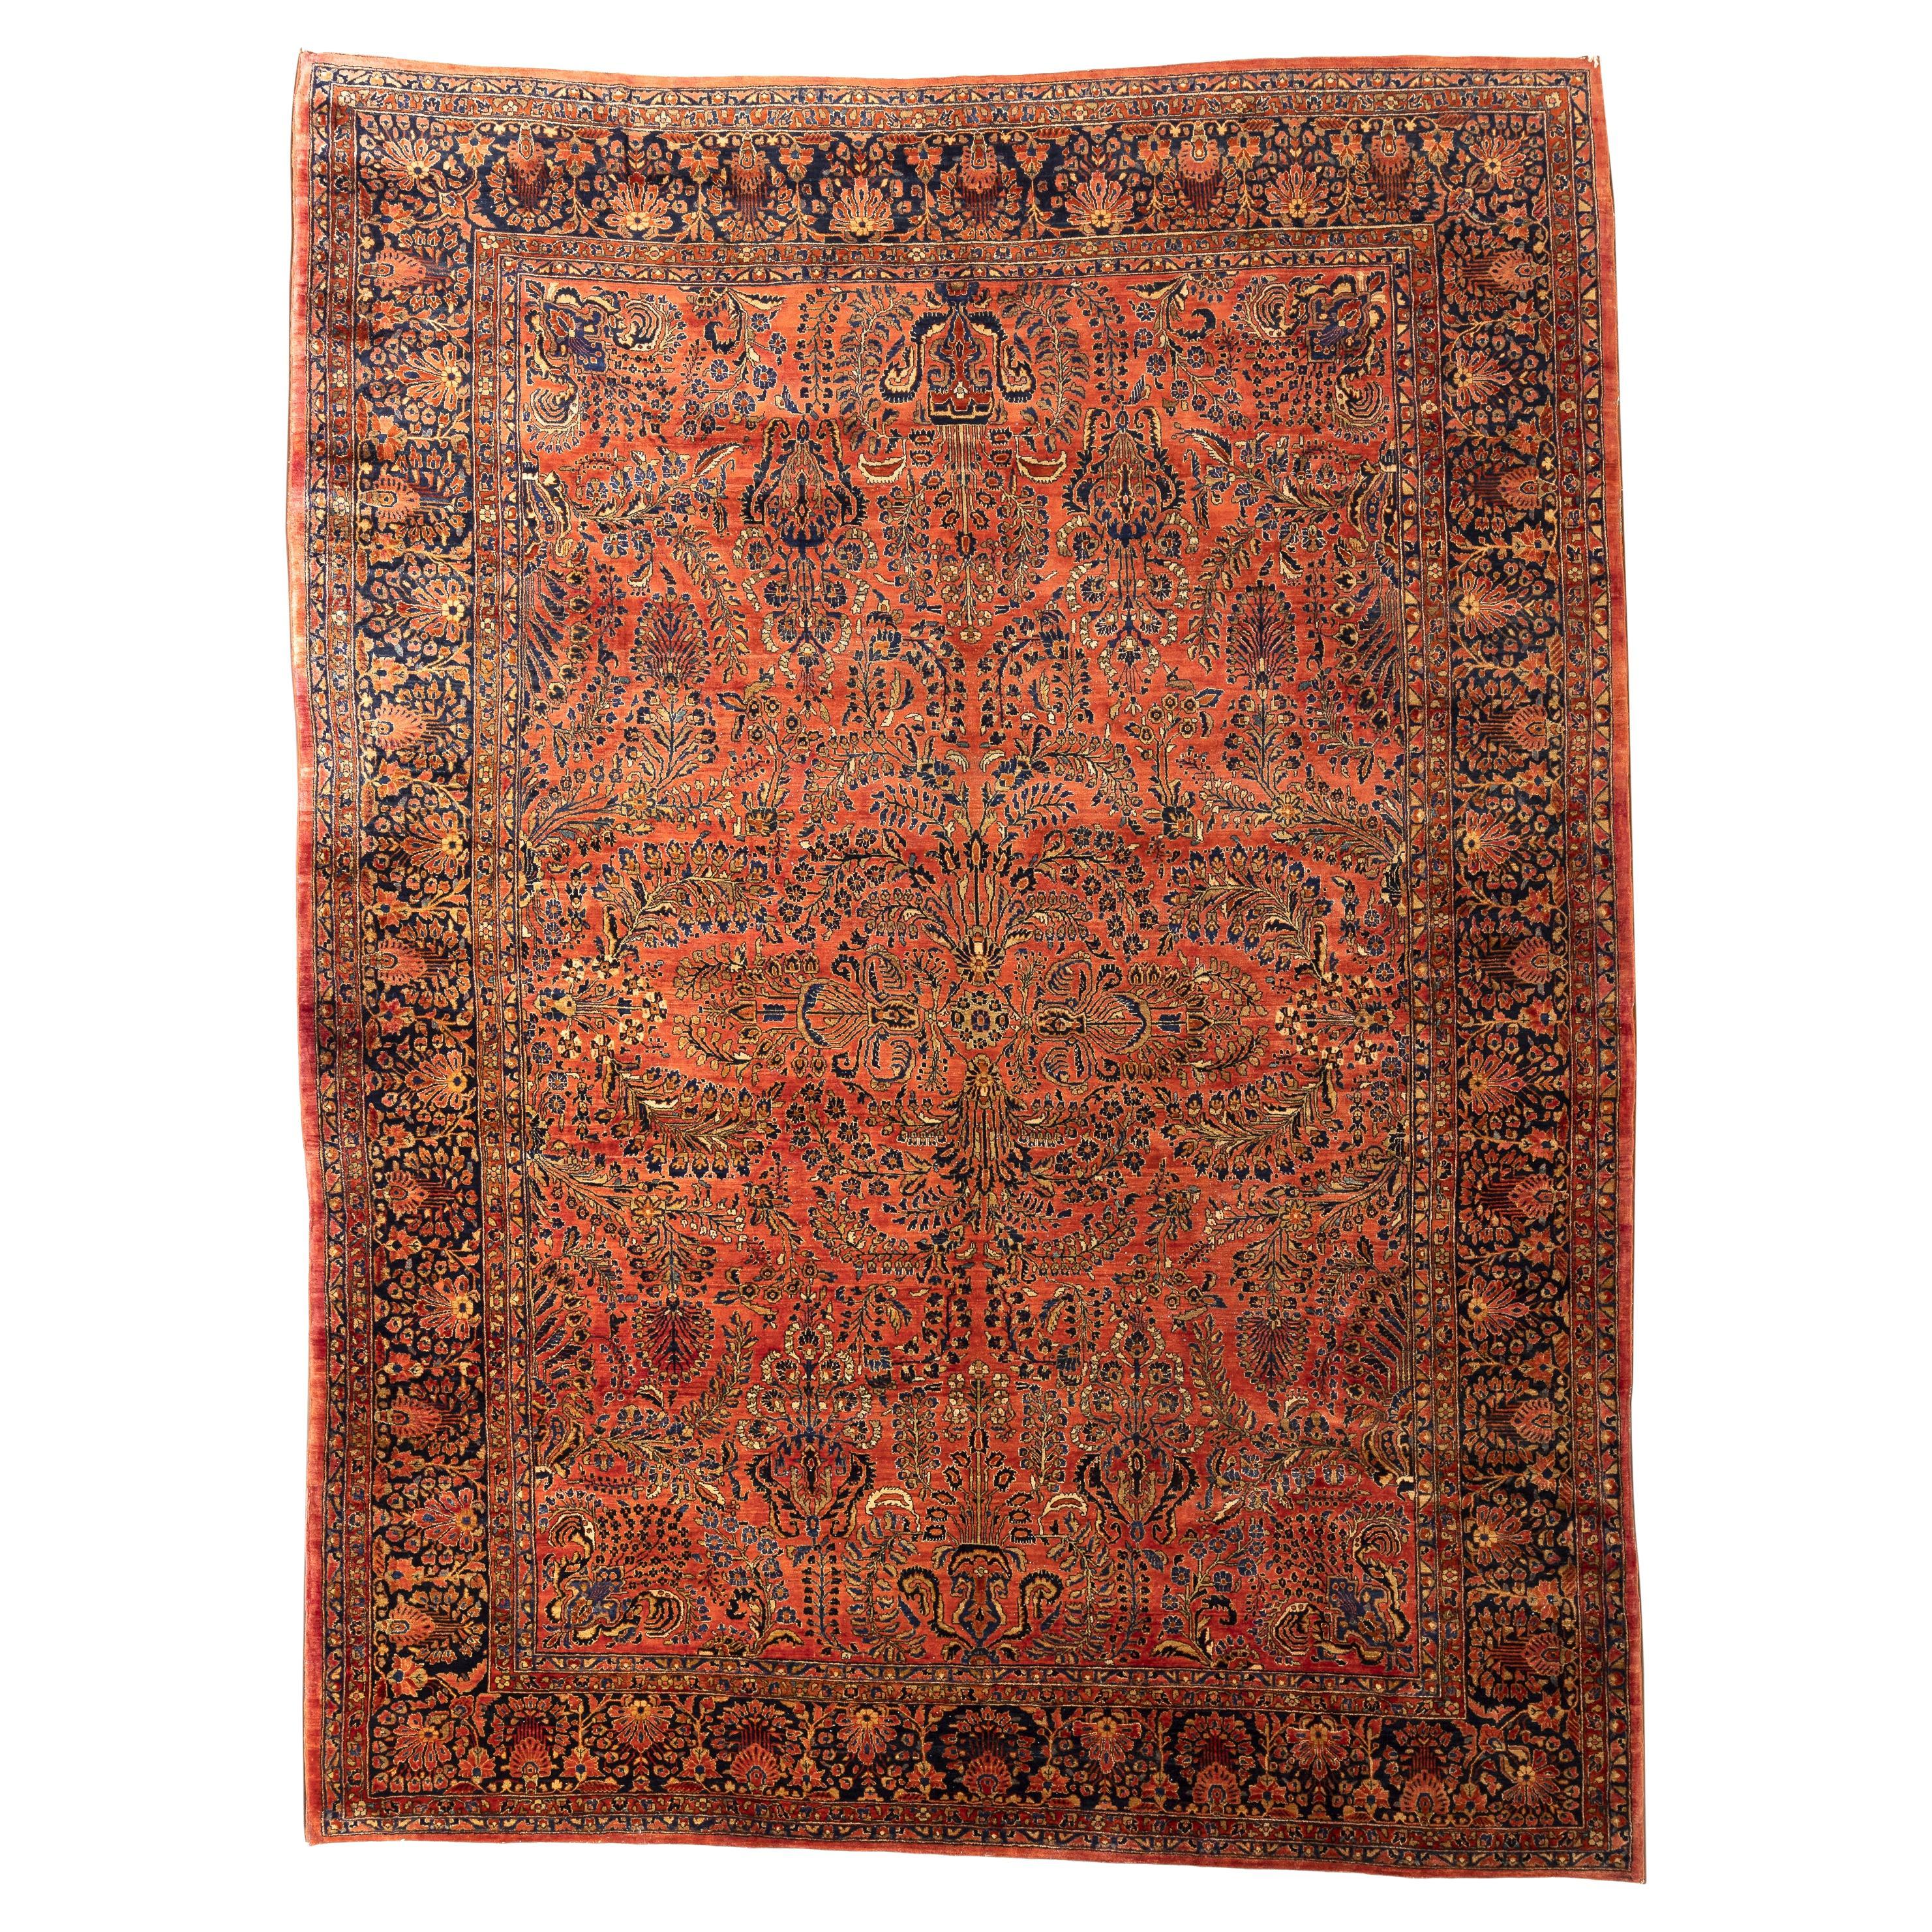 Lilihan Sarouk - Perse occidentale

Magnifique tapis ancien Lilihan Sarouk aux couleurs vives et éclatantes. Cette pièce d'excellente qualité a été fabriquée au début du XXe siècle dans le sud d'Arak par des Arméniens vivant en Perse. Avec un riche